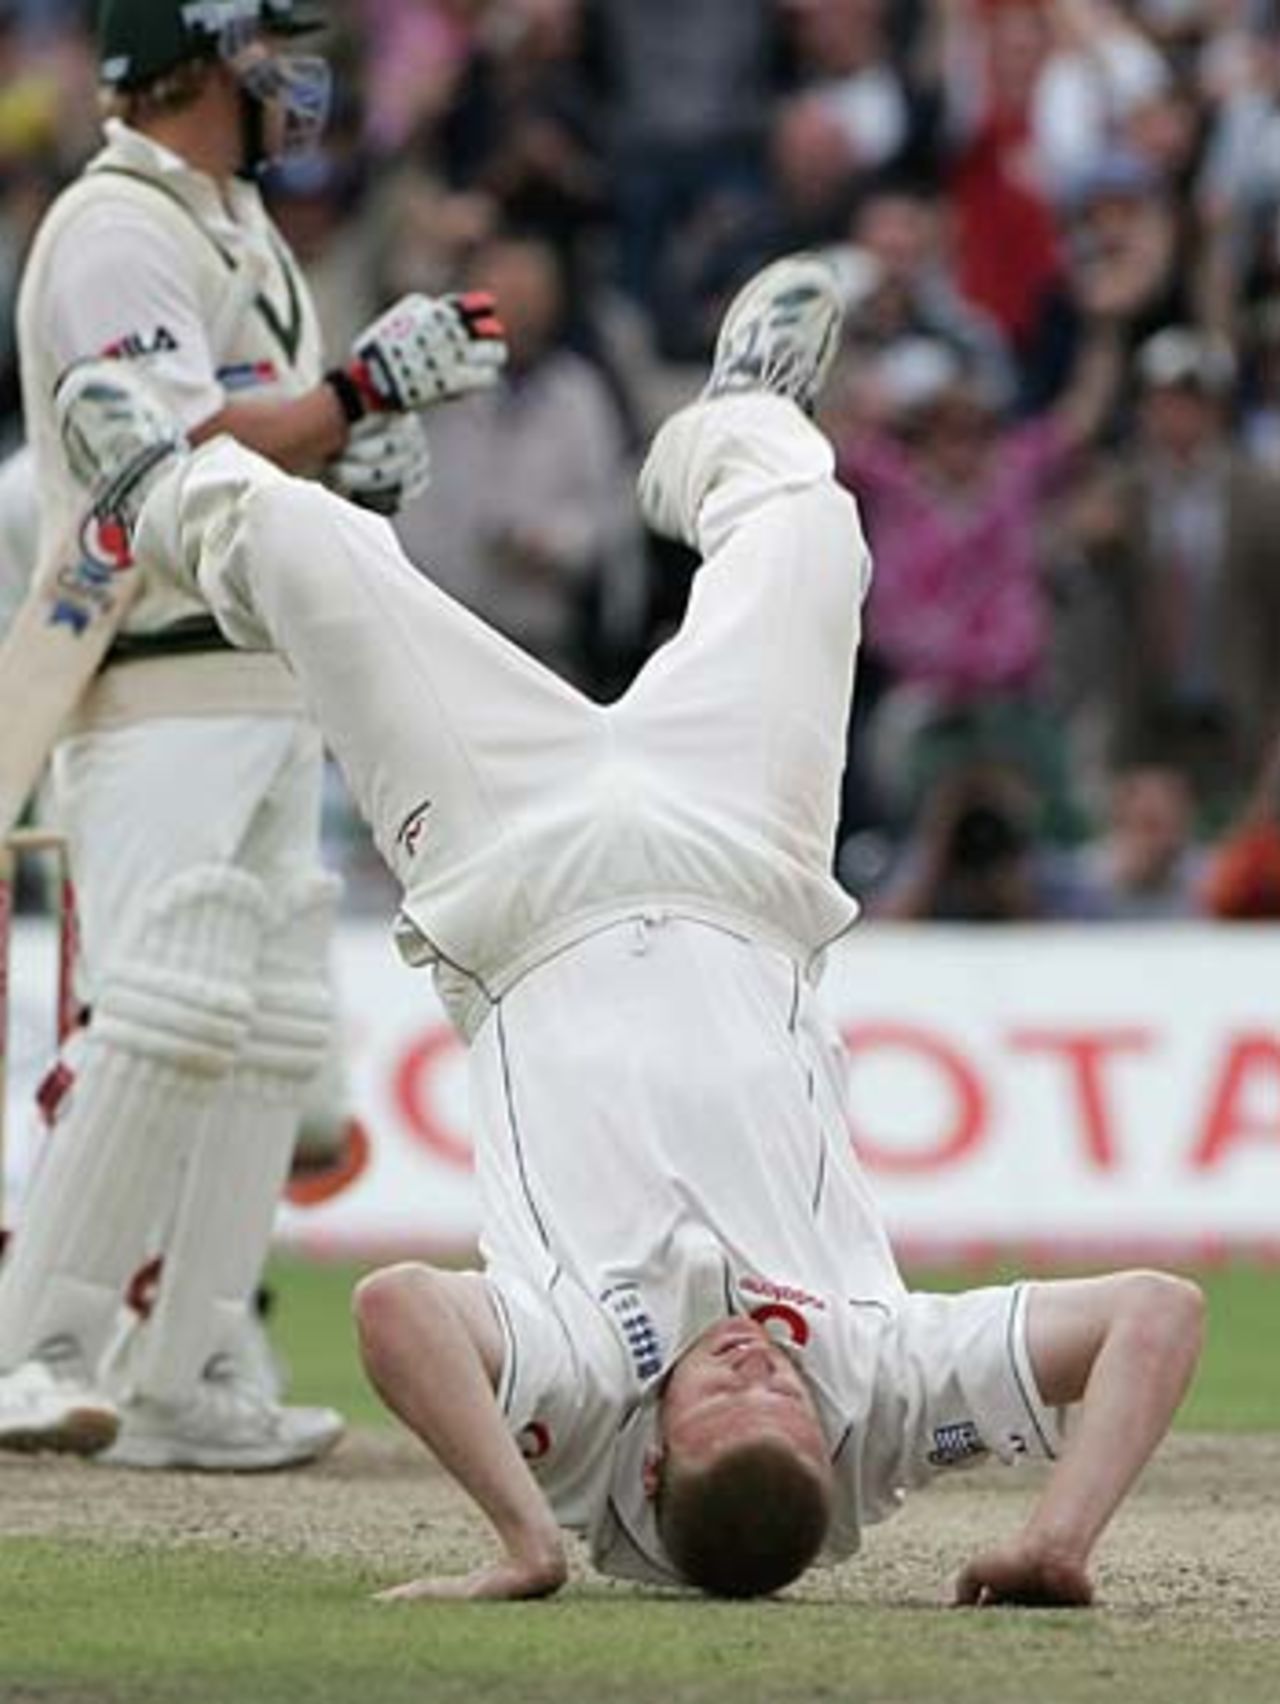 Andrew Flintoff does a backward flip after dismissing Shane Warne, England v Australia, 3rd Test, Old Trafford, August 15, 2005